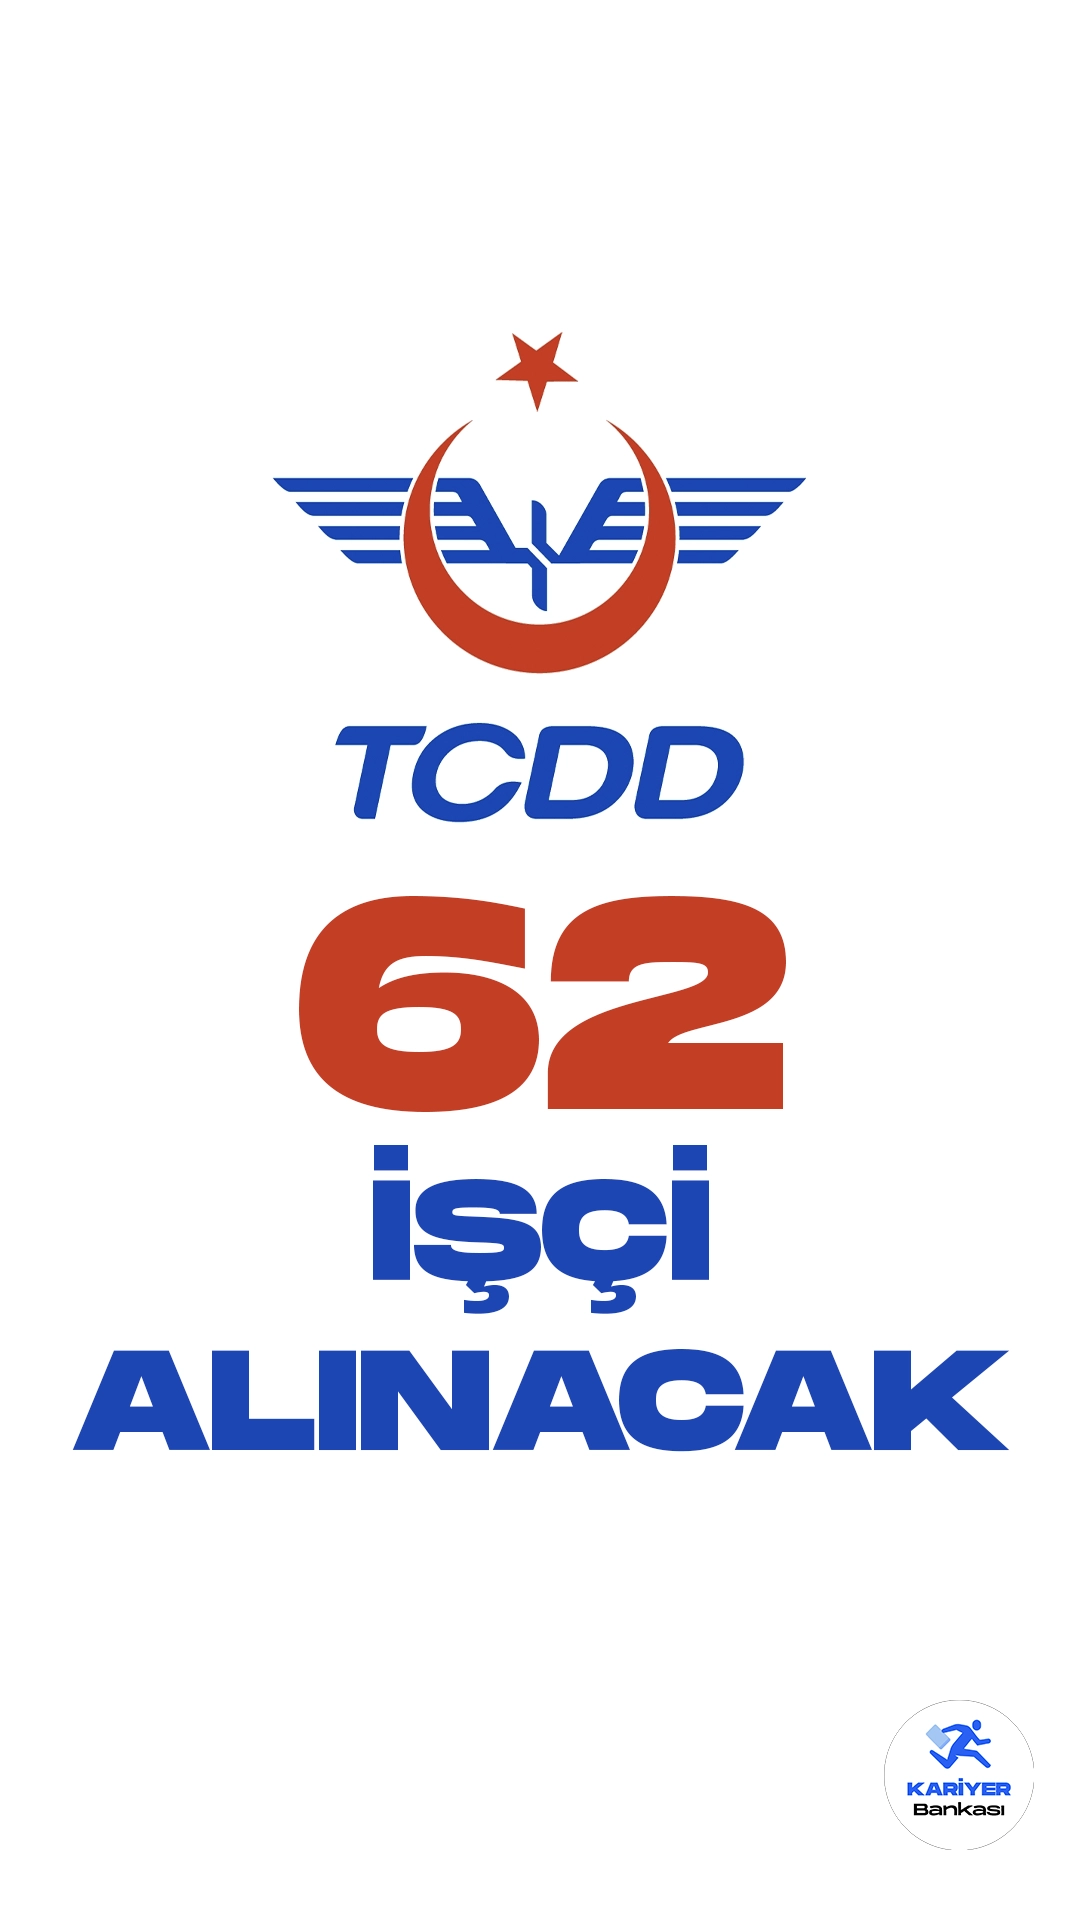 TCDD 62 İşçi Alımı Yapacak. Türkiye Cumhuriyeti Devlet Demiryolları İşletmesi Genel Müdürlüğü (TCDD) işçi alımı duyurusu yayımlandı. Resmi Gazete'de yayımlanan duyuruda, TCDD'ye işçi alımı yapılacağı aktarıldı. Başvurular 4 Aralık itibarıyla alınacak.